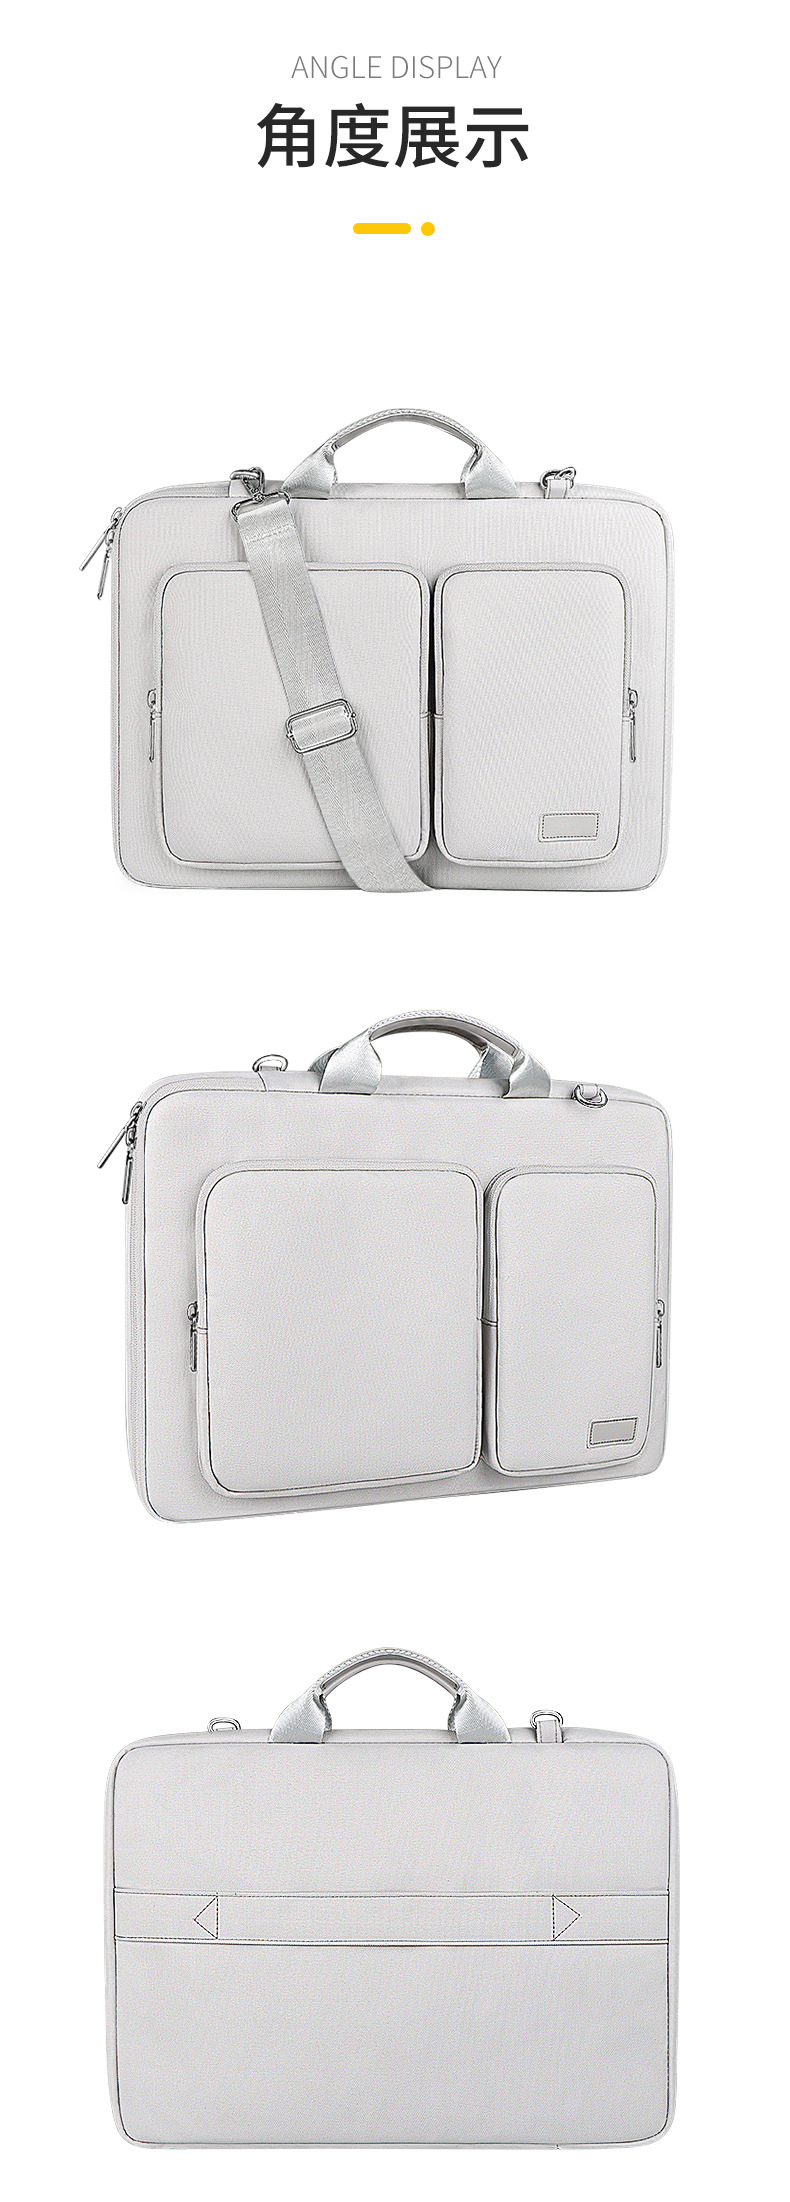 手提電腦包蘋果macbook單肩包華為pro15寸16.1寸筆記本內膽包